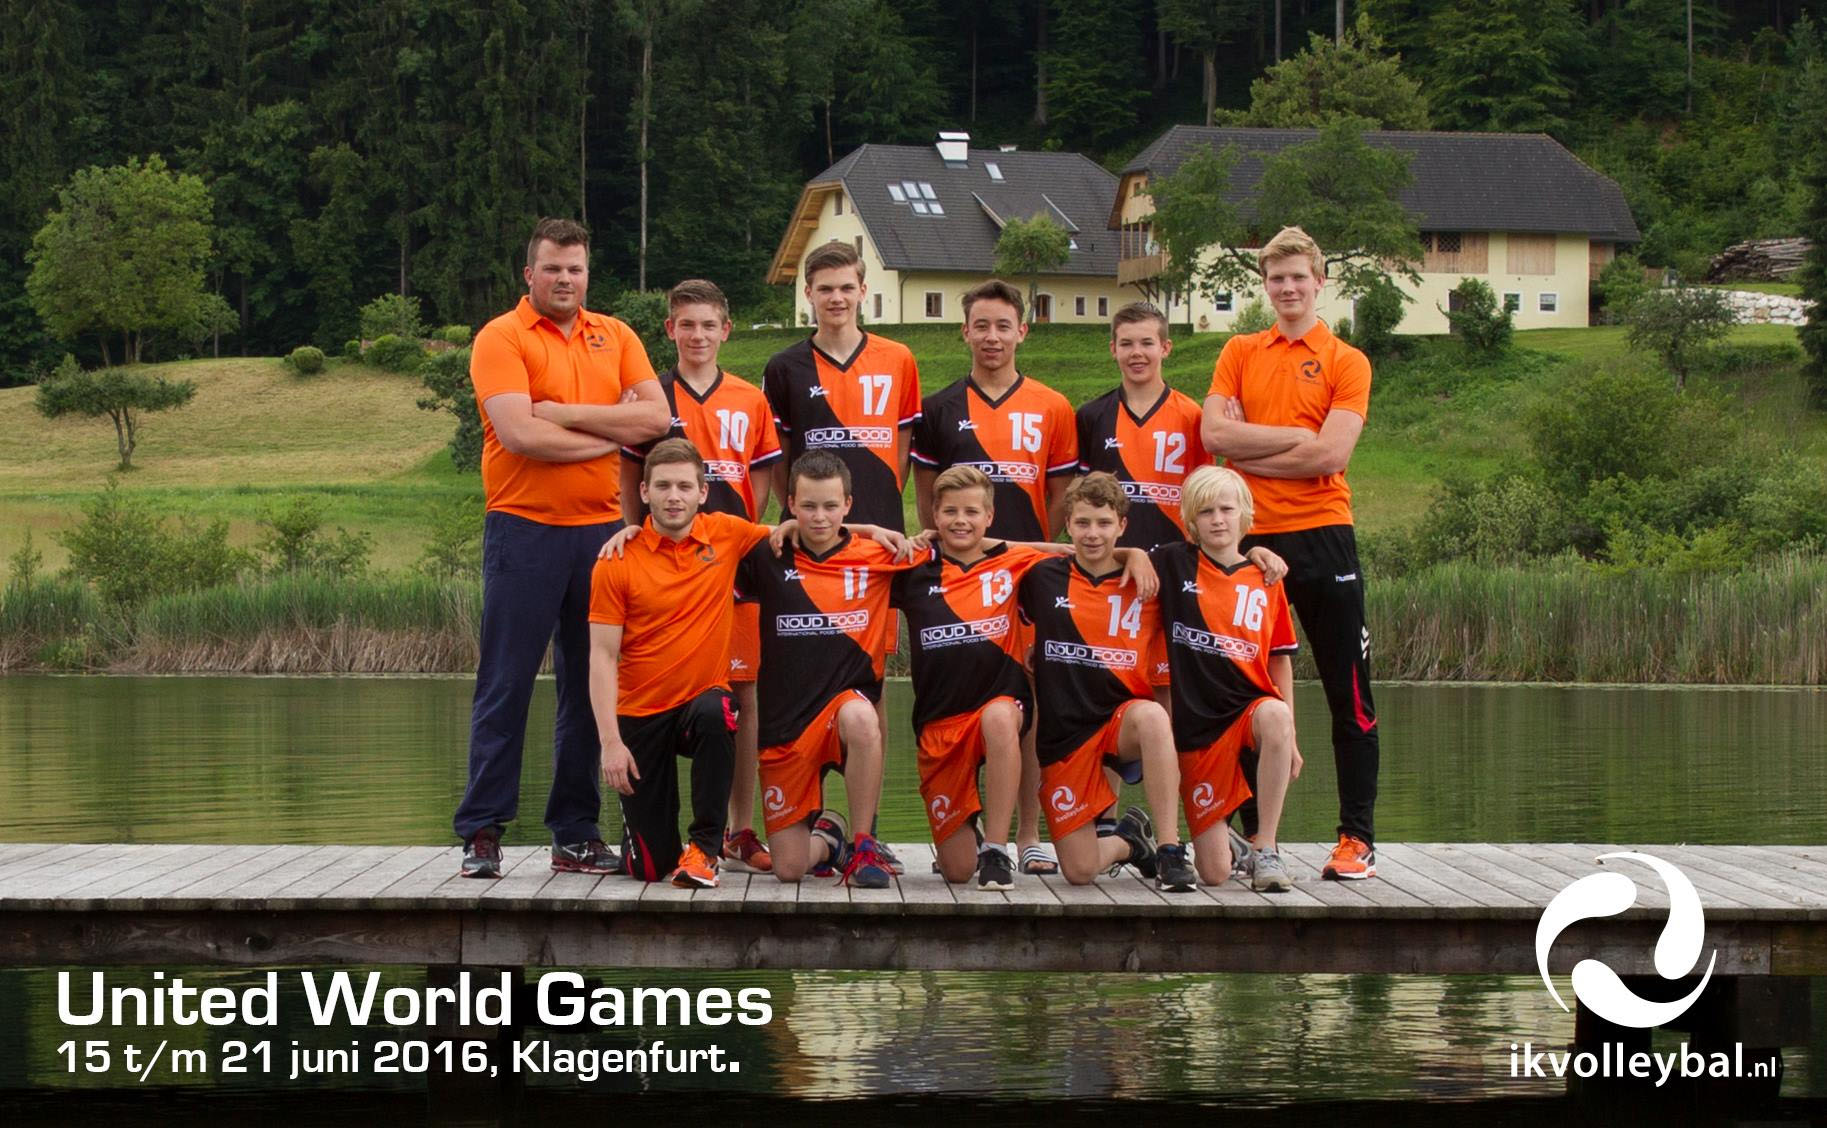 united-world-games-oostenrijk-2016-3